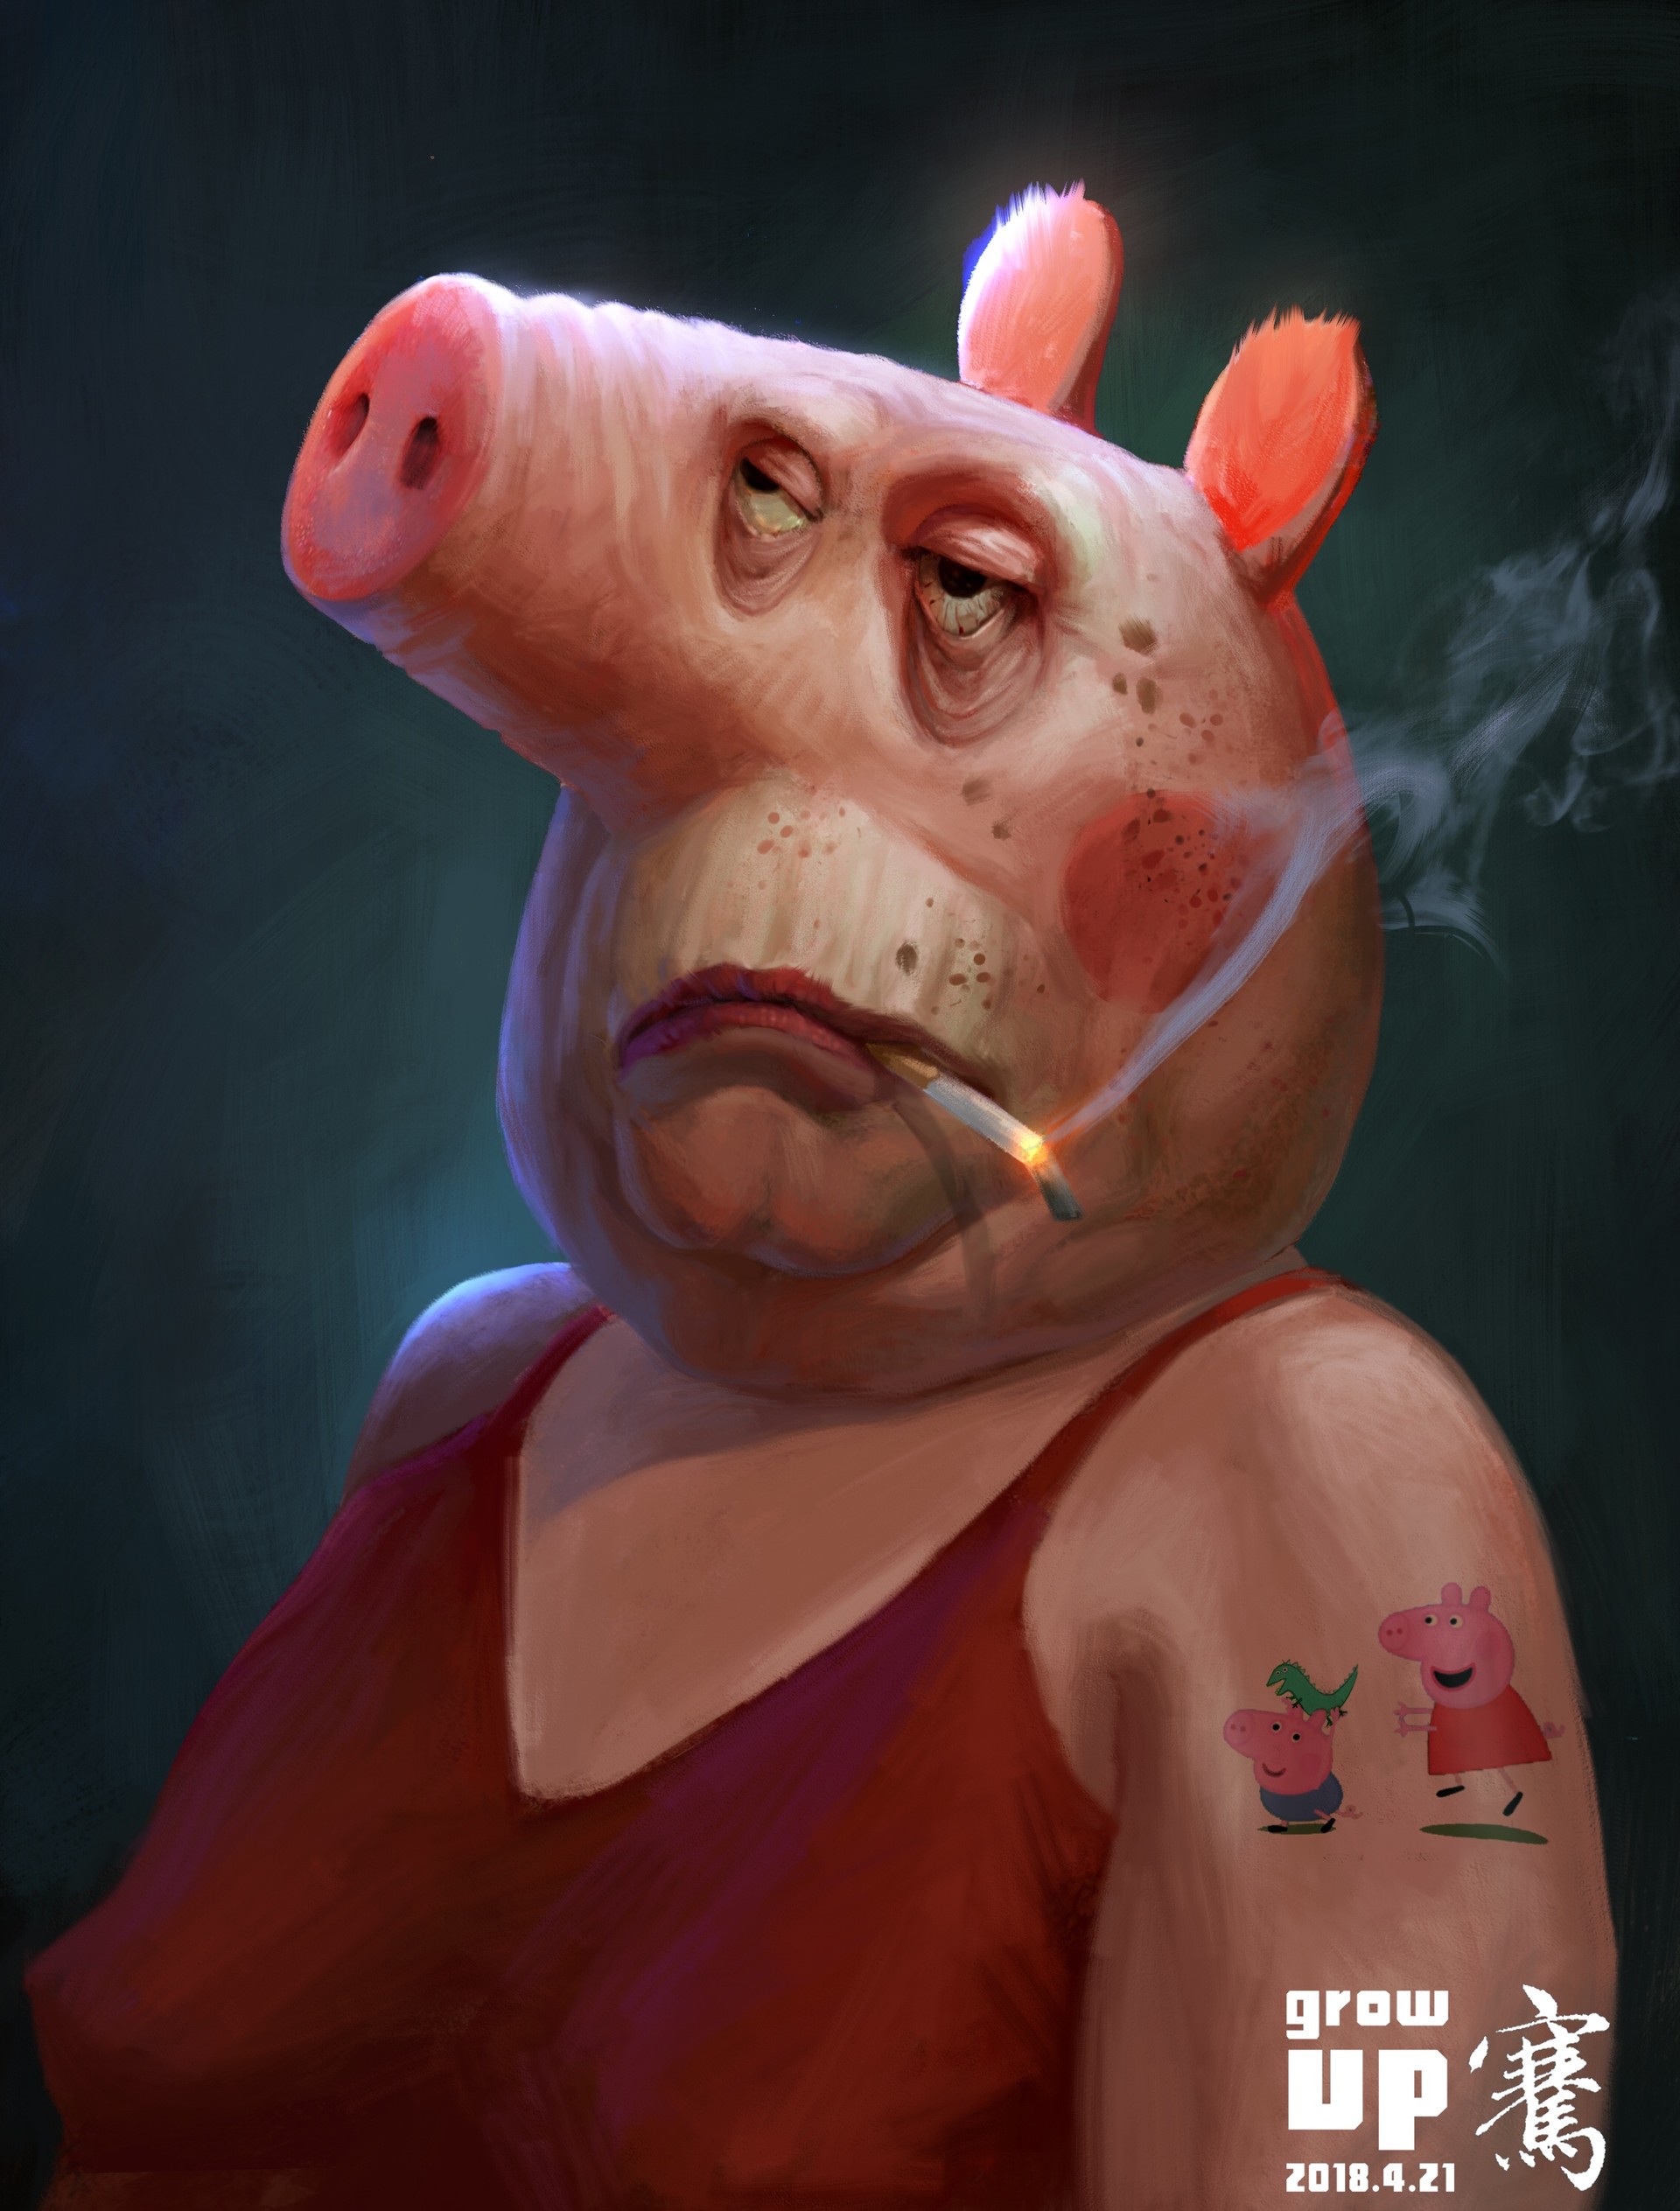 Глупые свиньи. Свиньи. Свинья с сигаретой. Cdbyzm c cbufhjq.